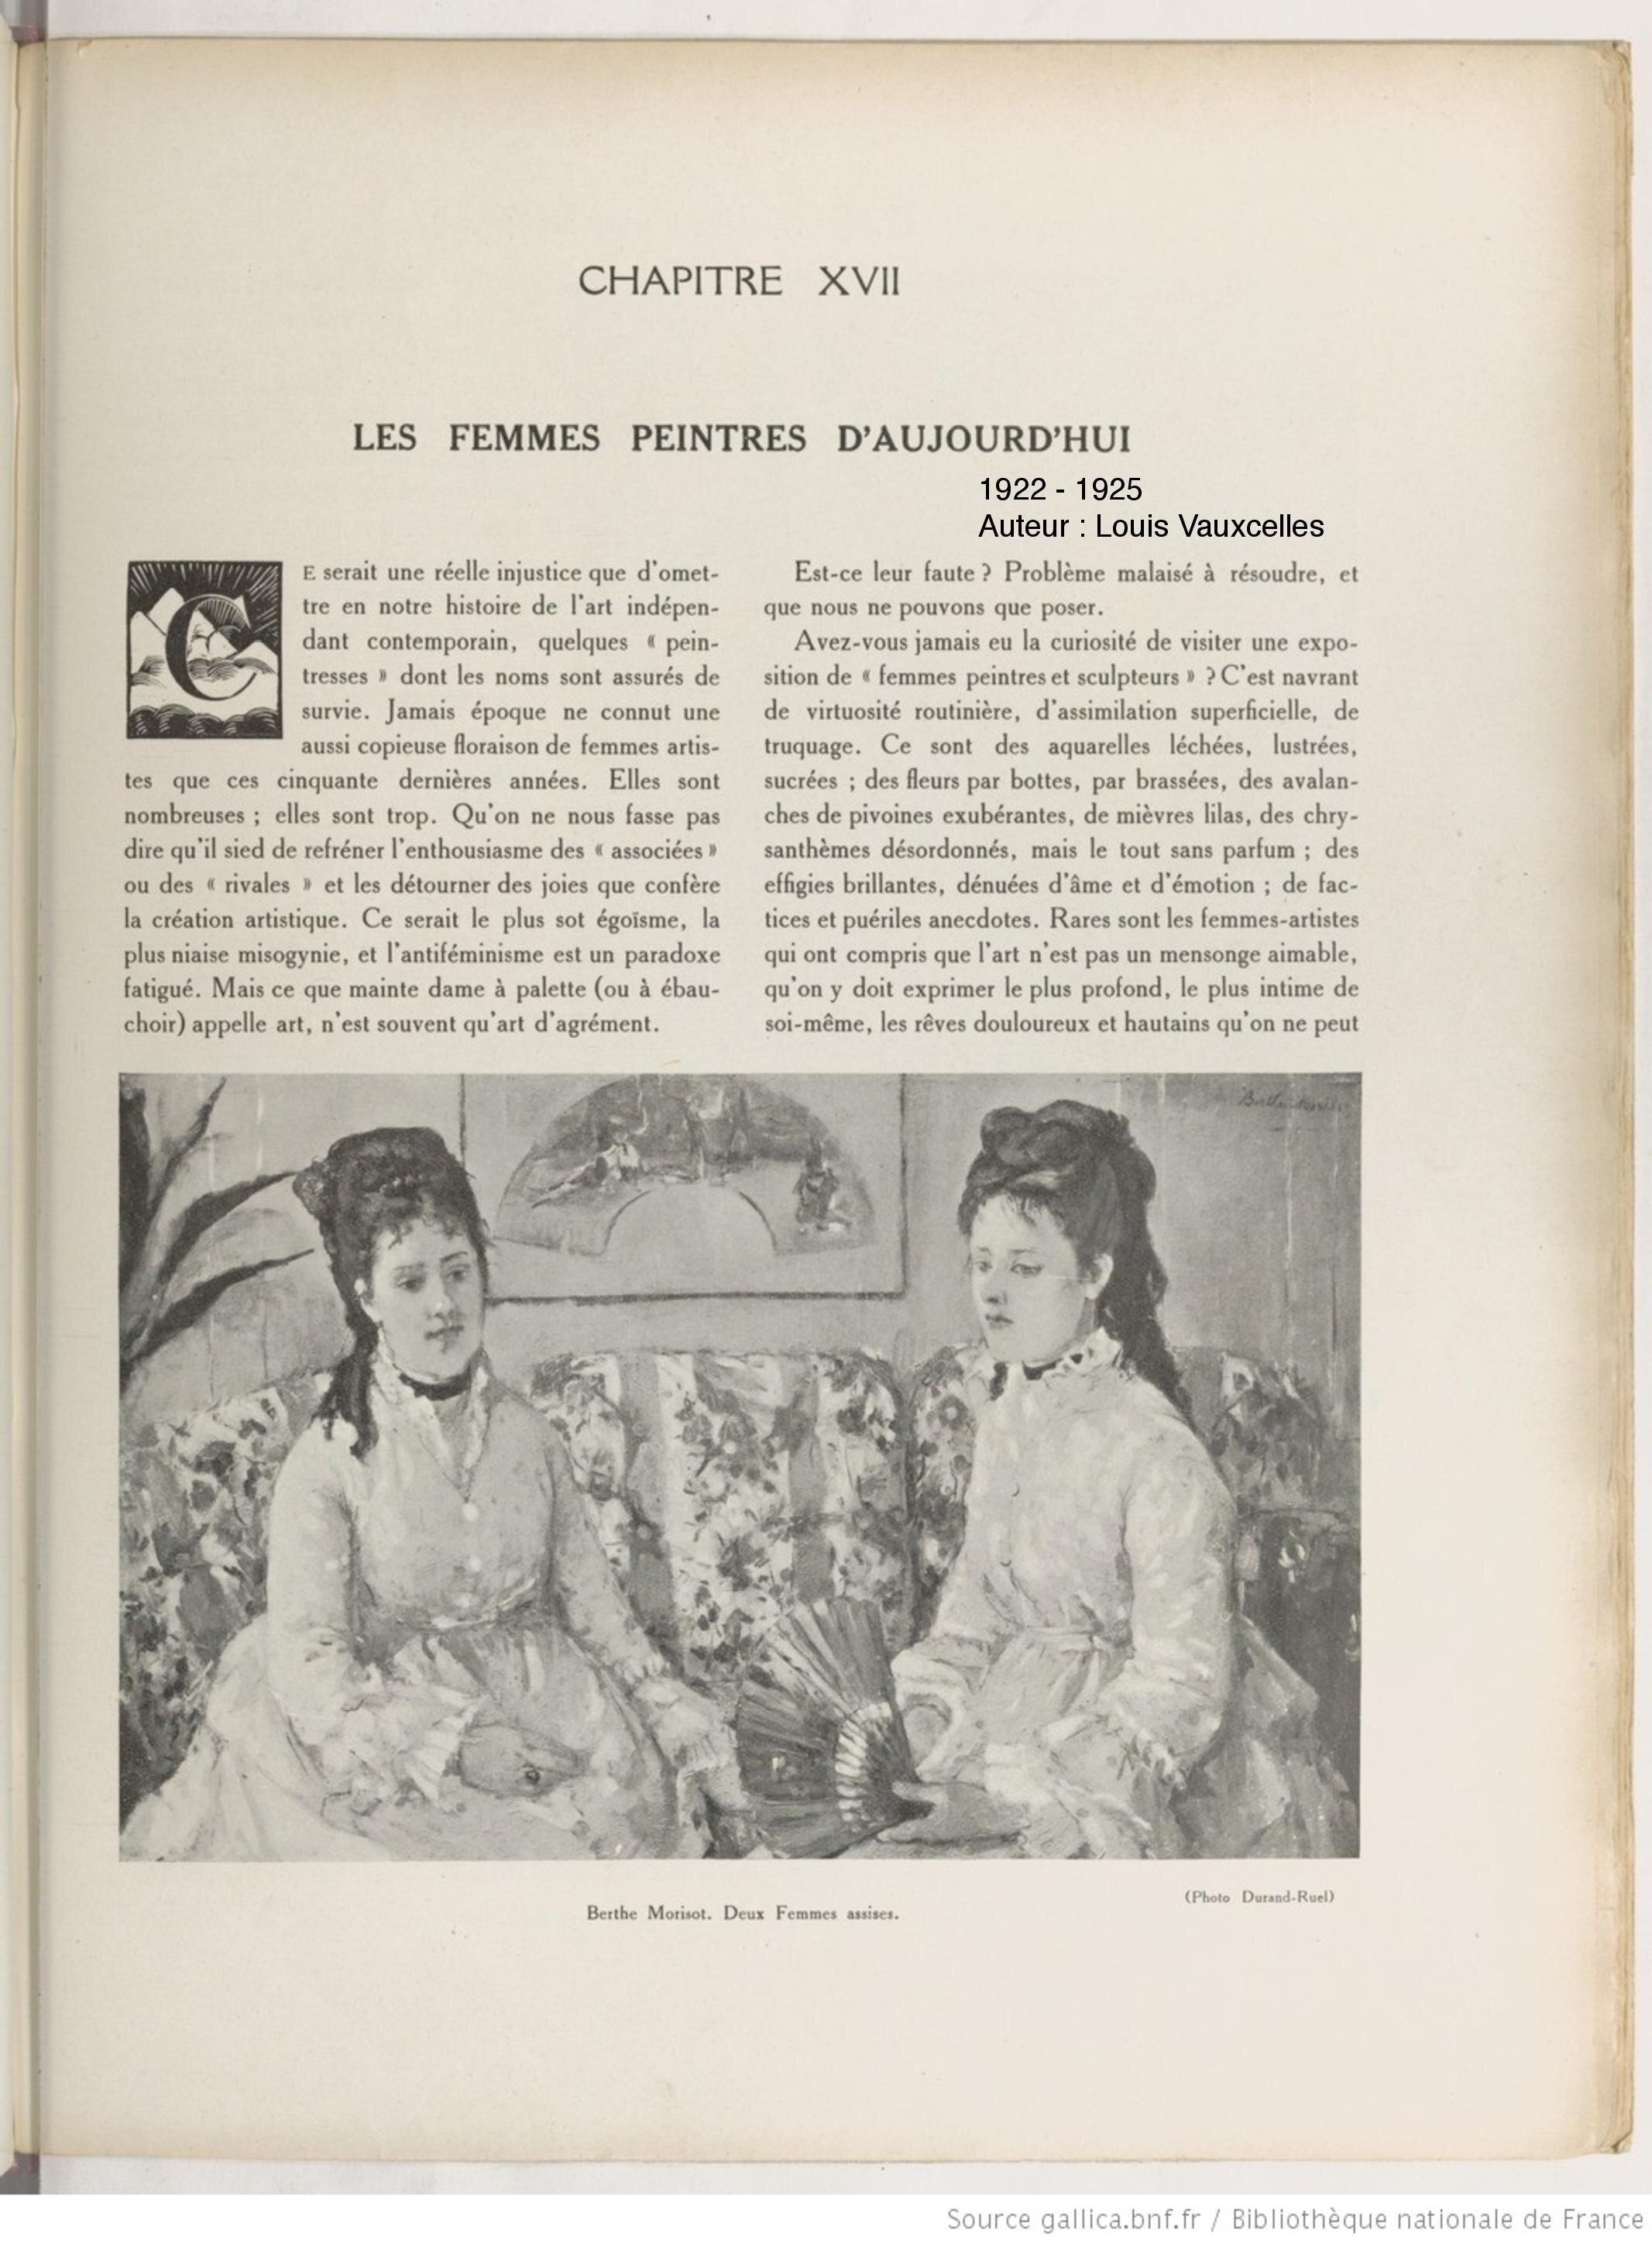 Histoire Générale de l'Art Français, Louis Vauxcelles, 1925 (Copy)